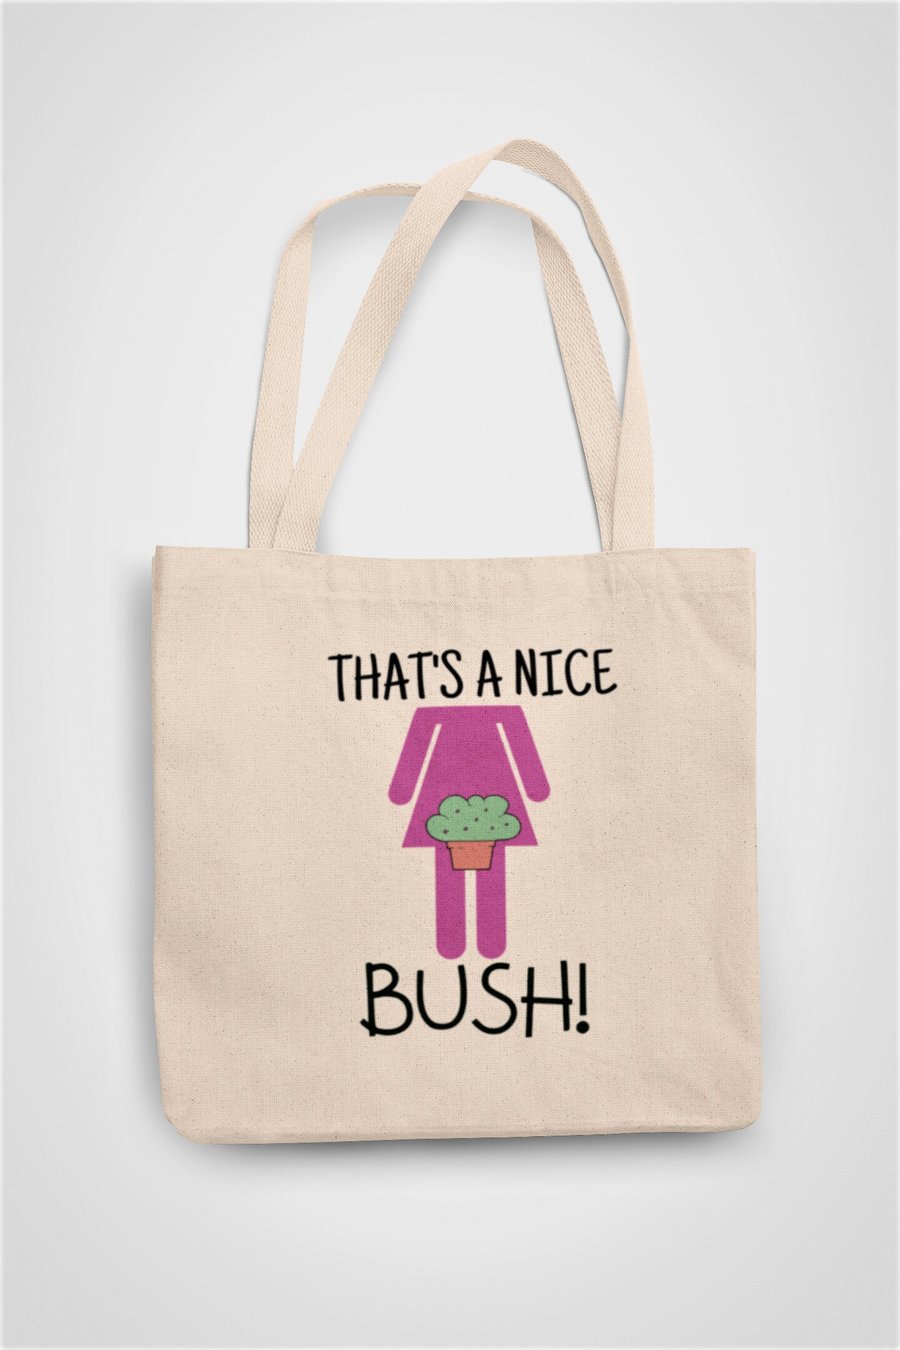 That's A Nice Bush Outdoor Garden Tote Bag Reusable Cotton bag - Novelty funny 